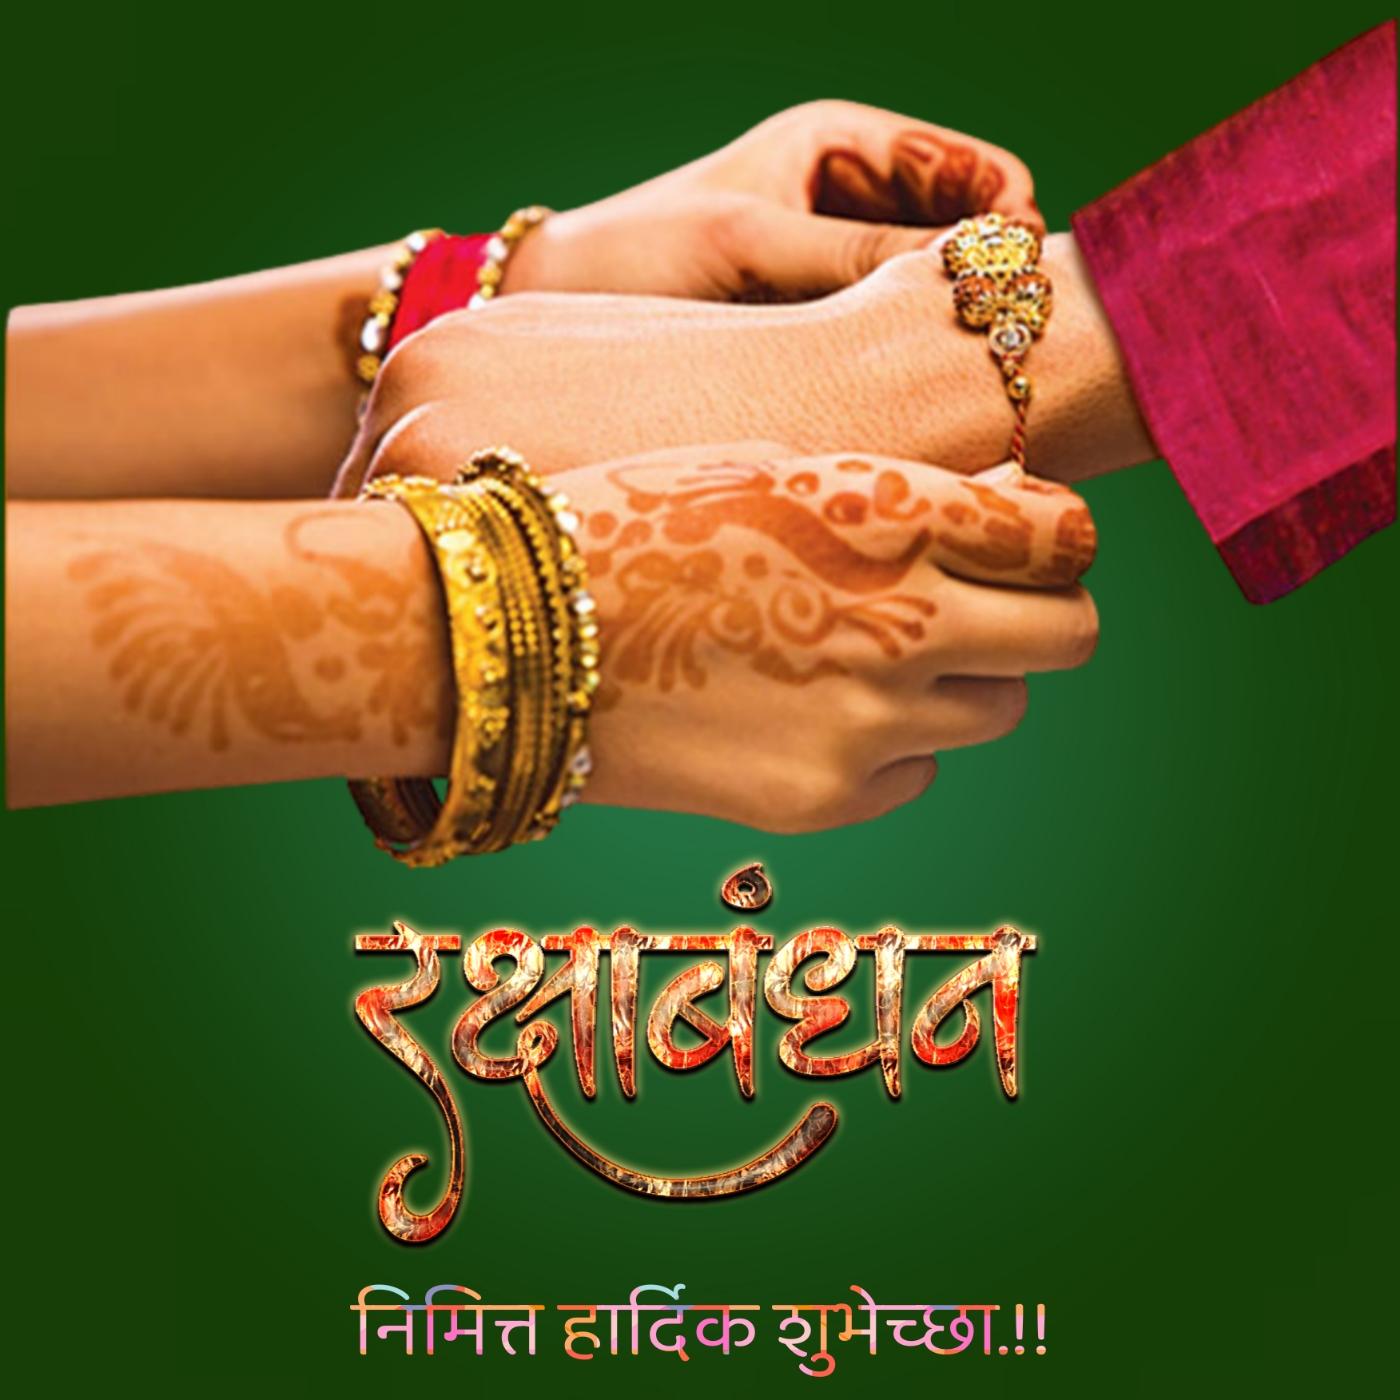 Happy Raksha Bandhan Images in Marathi - ShayariMaza